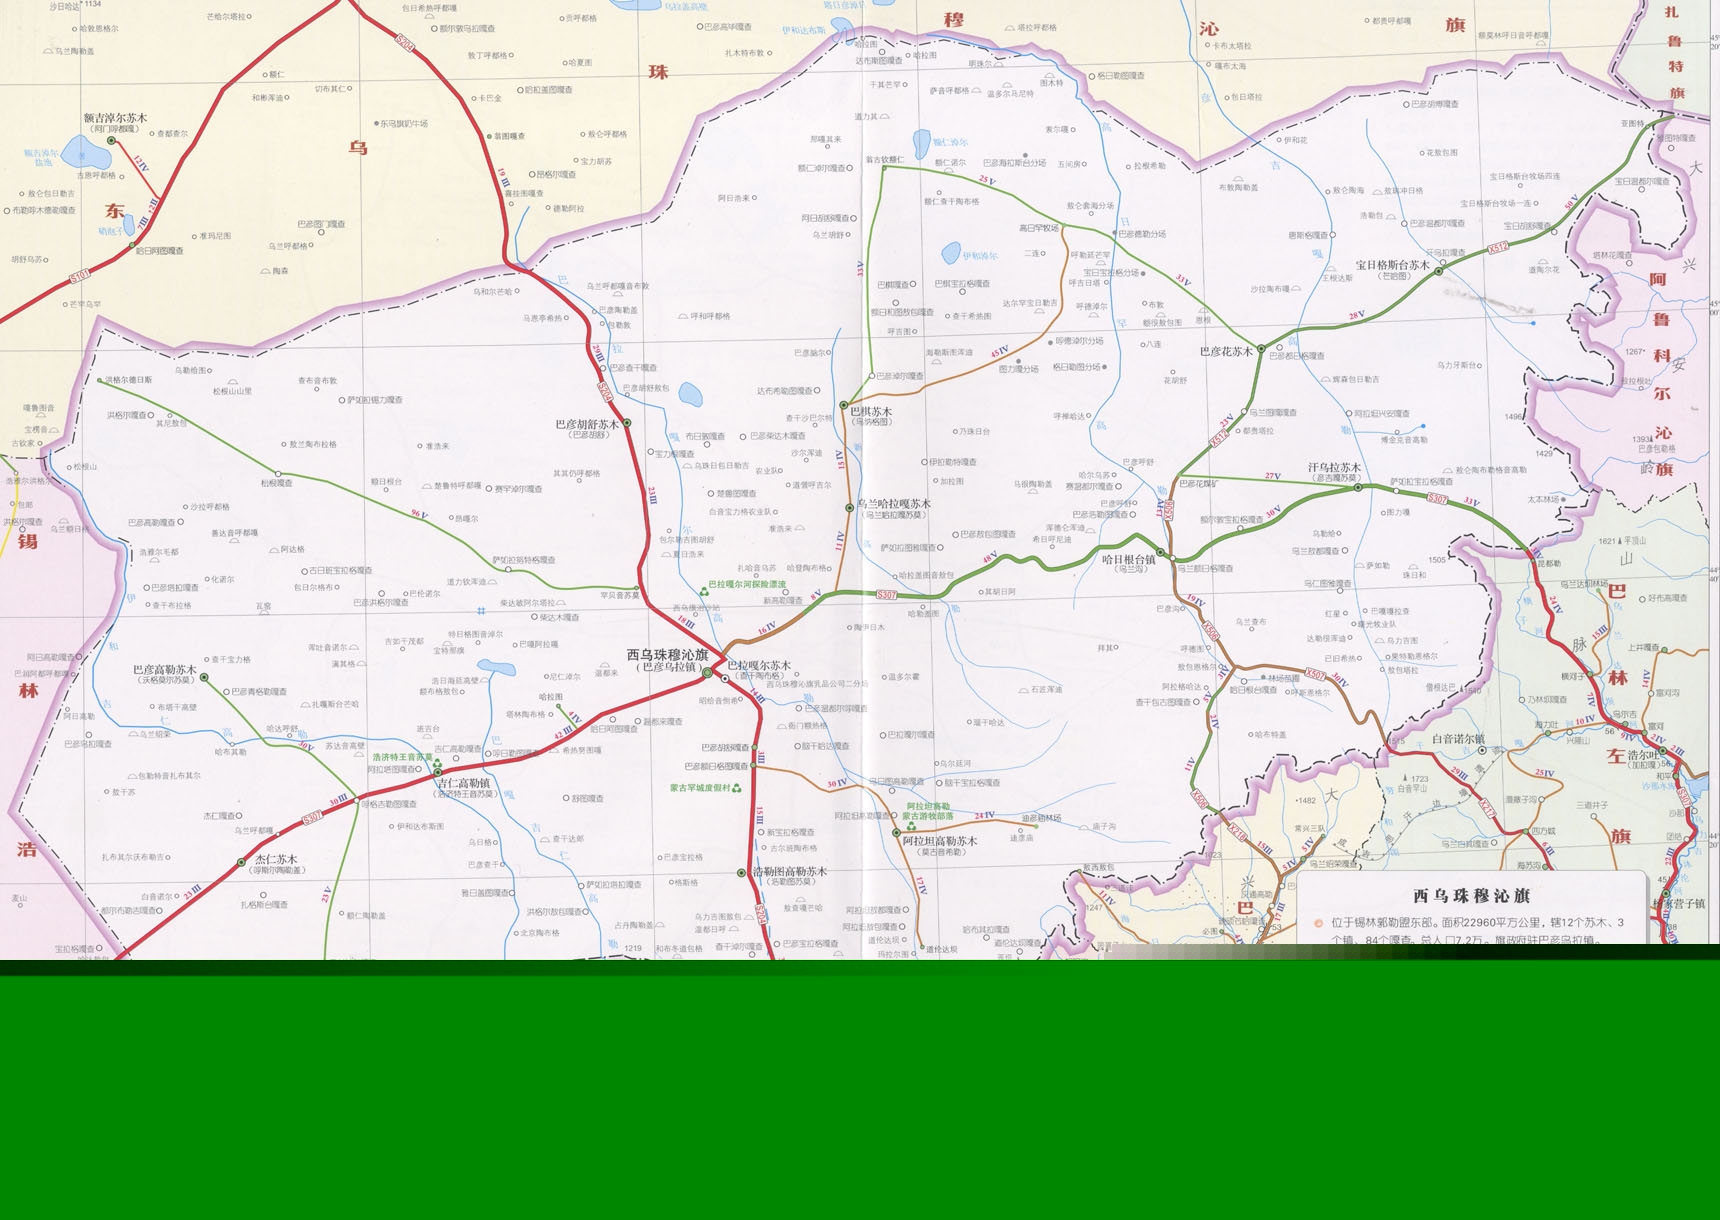 2006年锡林郭勒盟公路图-锡林浩特市公路图-地图专区图片